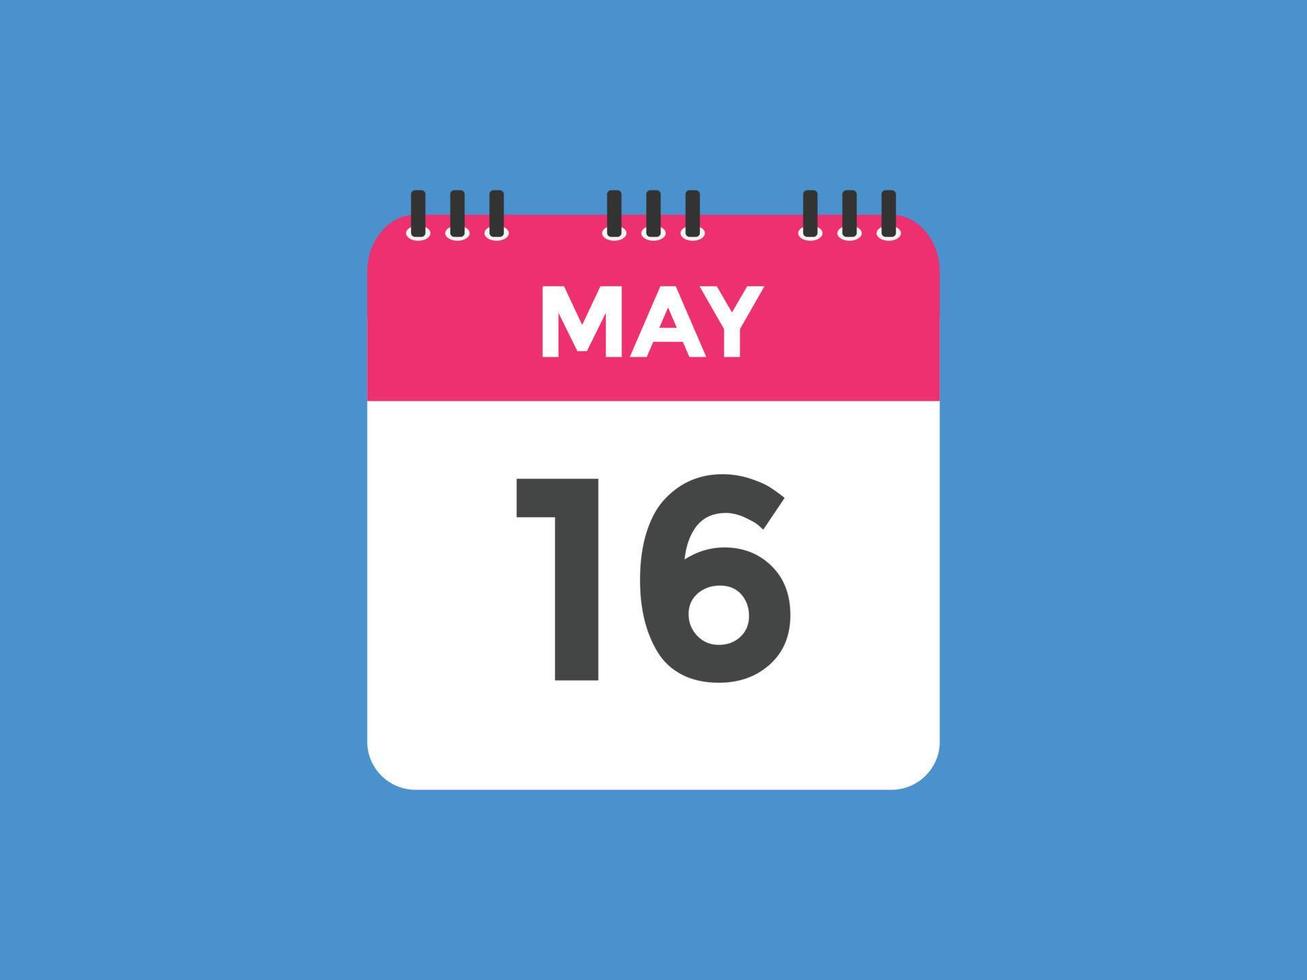 may 16 calendar reminder. 16th may daily calendar icon template. Calendar 16th may icon Design template. Vector illustration